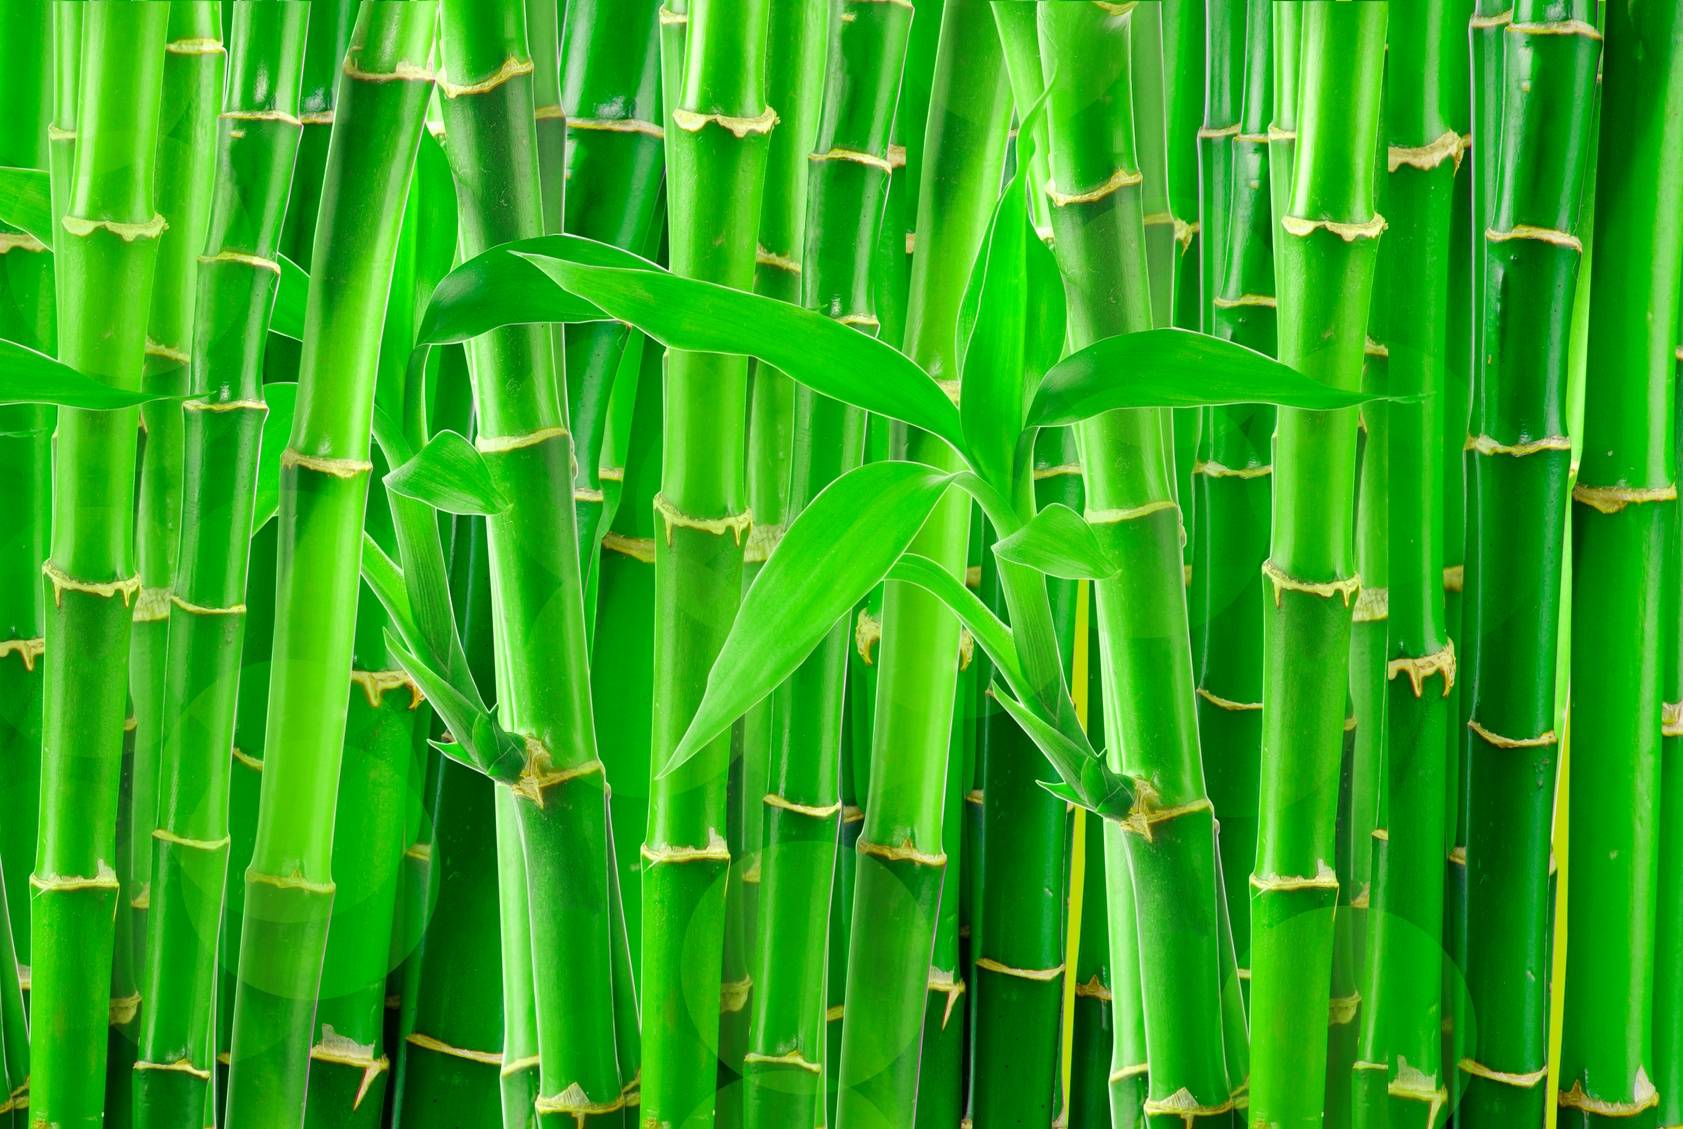 Bambus - jak wykorzystuje się ten surowiec? Czy produkcja bambusa może zdetronizować plastik? Czy uprawa bambusa jest ekologiczna?